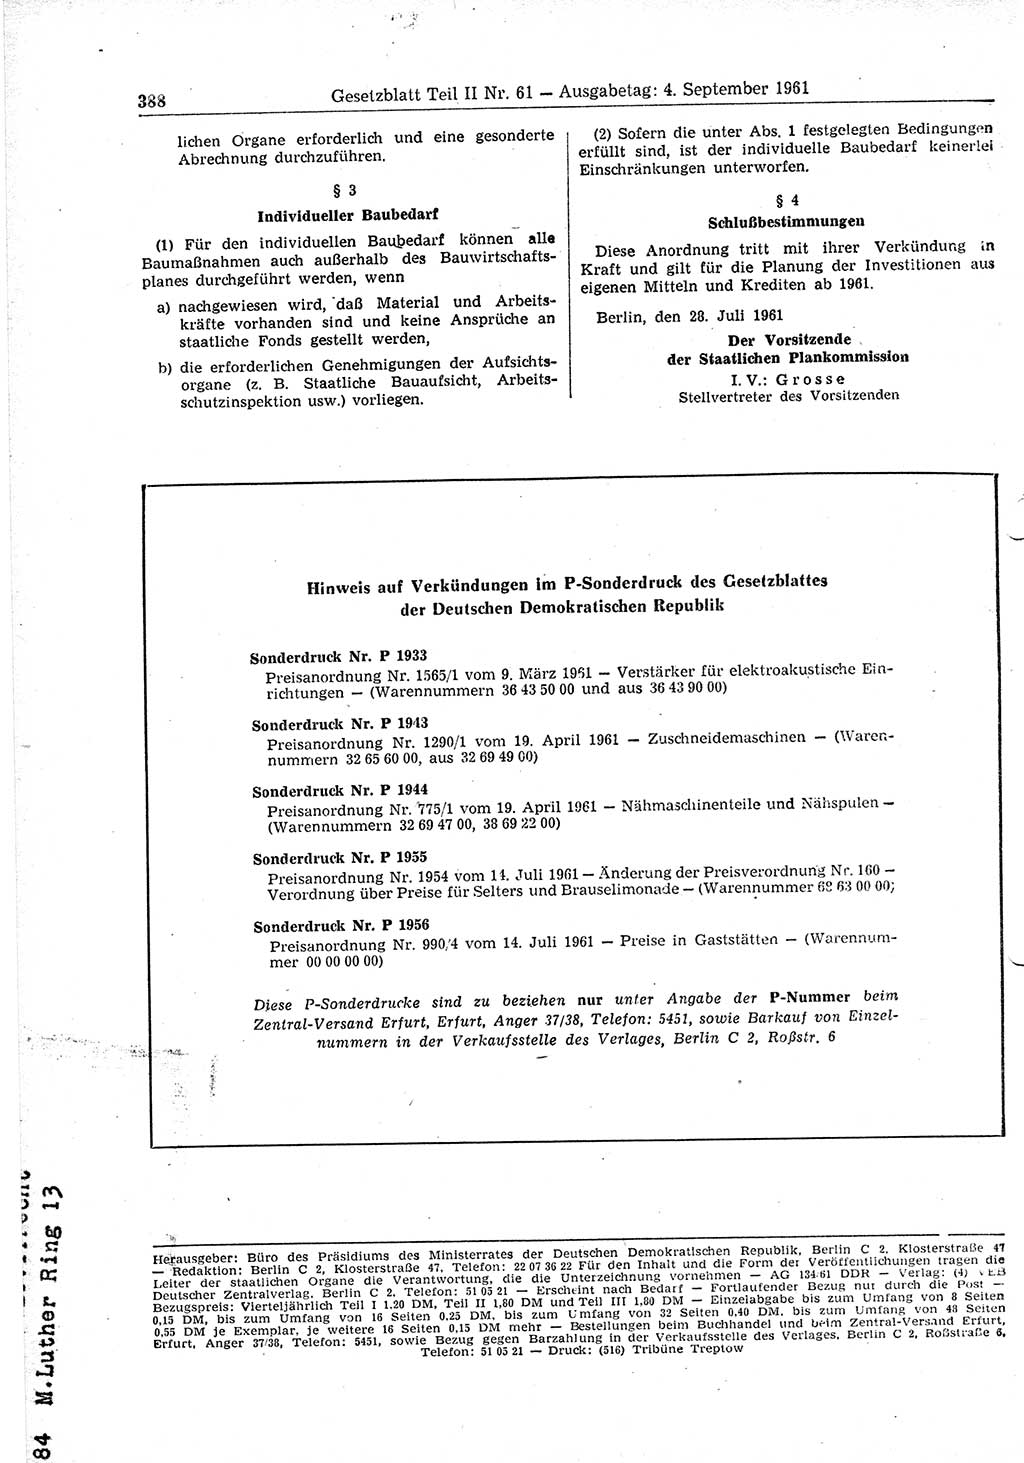 Gesetzblatt (GBl.) der Deutschen Demokratischen Republik (DDR) Teil ⅠⅠ 1961, Seite 388 (GBl. DDR ⅠⅠ 1961, S. 388)